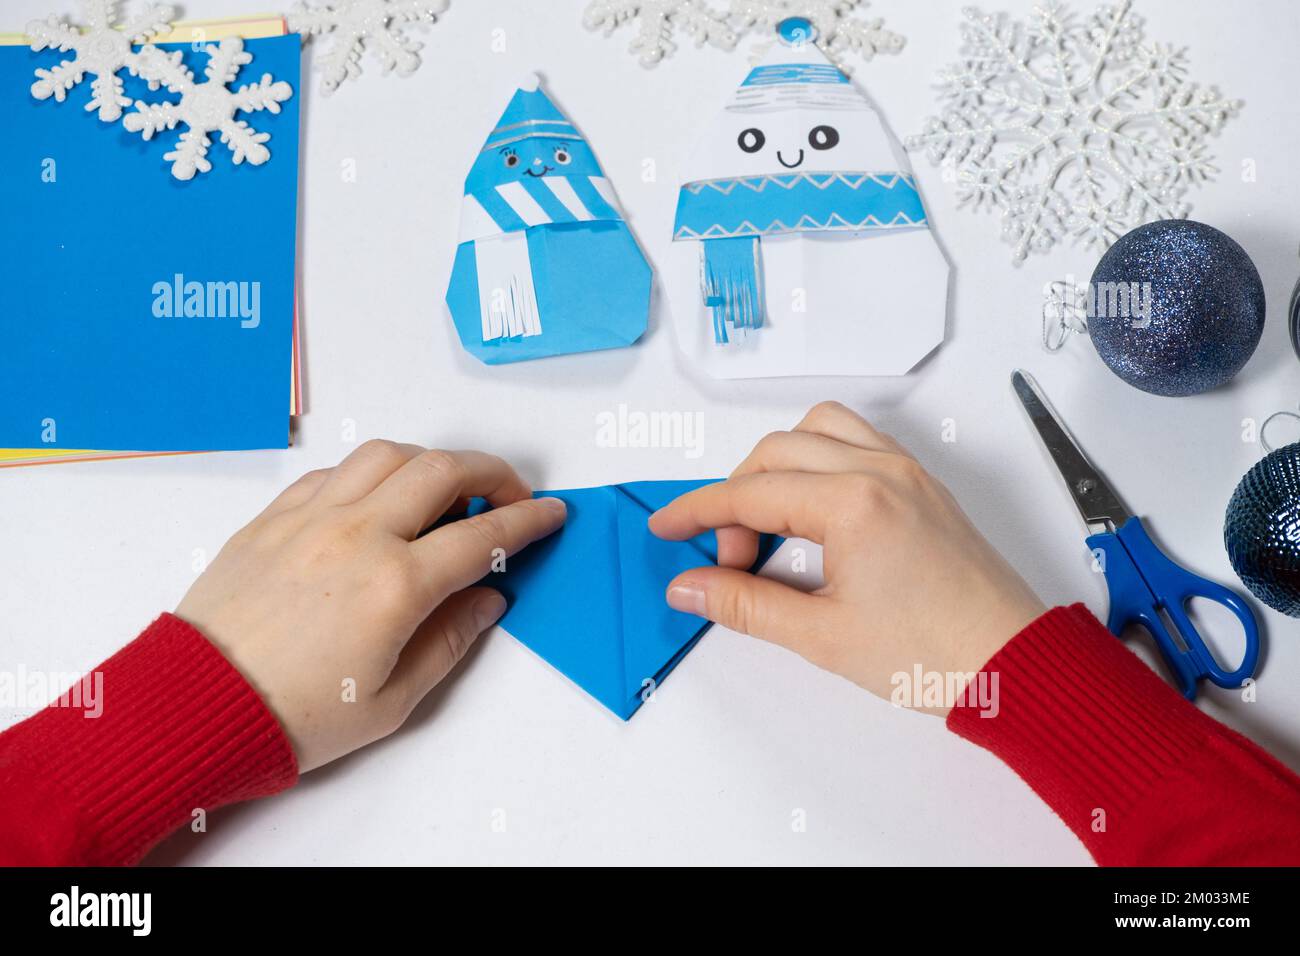 Creazione di artigianato origami da carta per Natale e Capodanno, figurine di pupazzi di neve. Foto Stock